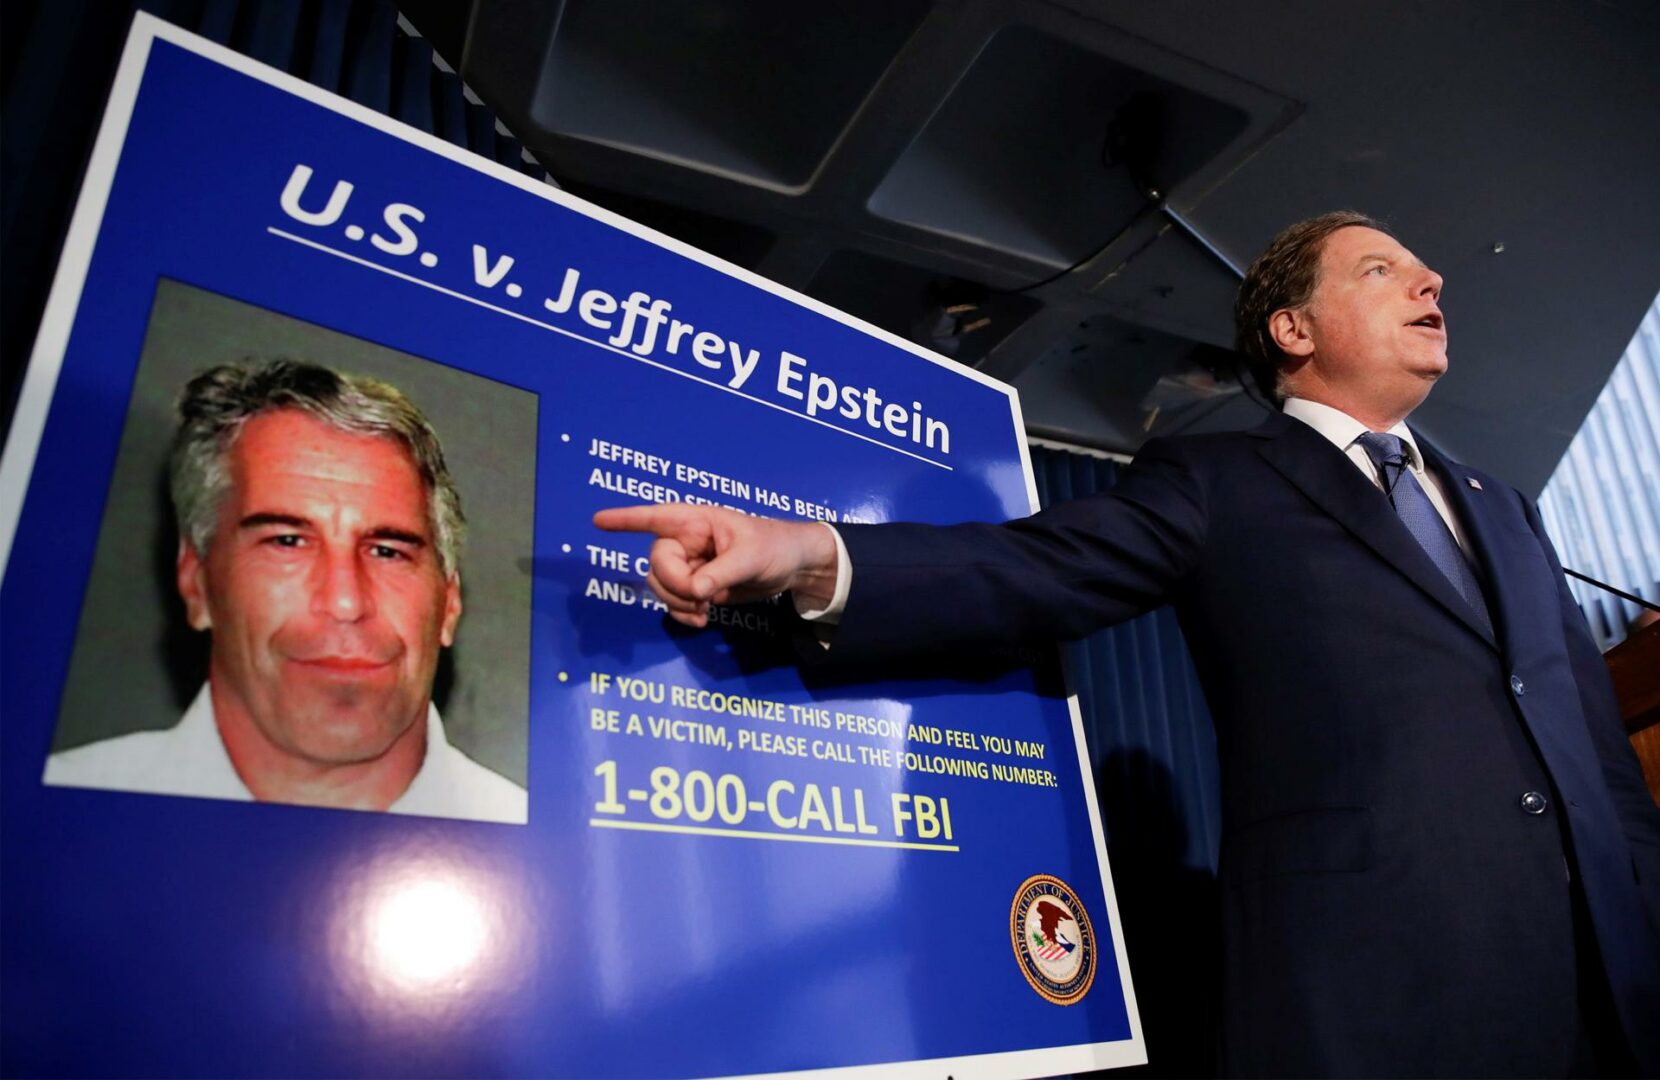 El multimillonario Leon Black pagó 62,5 millones para evitar demandas por el caso Epstein